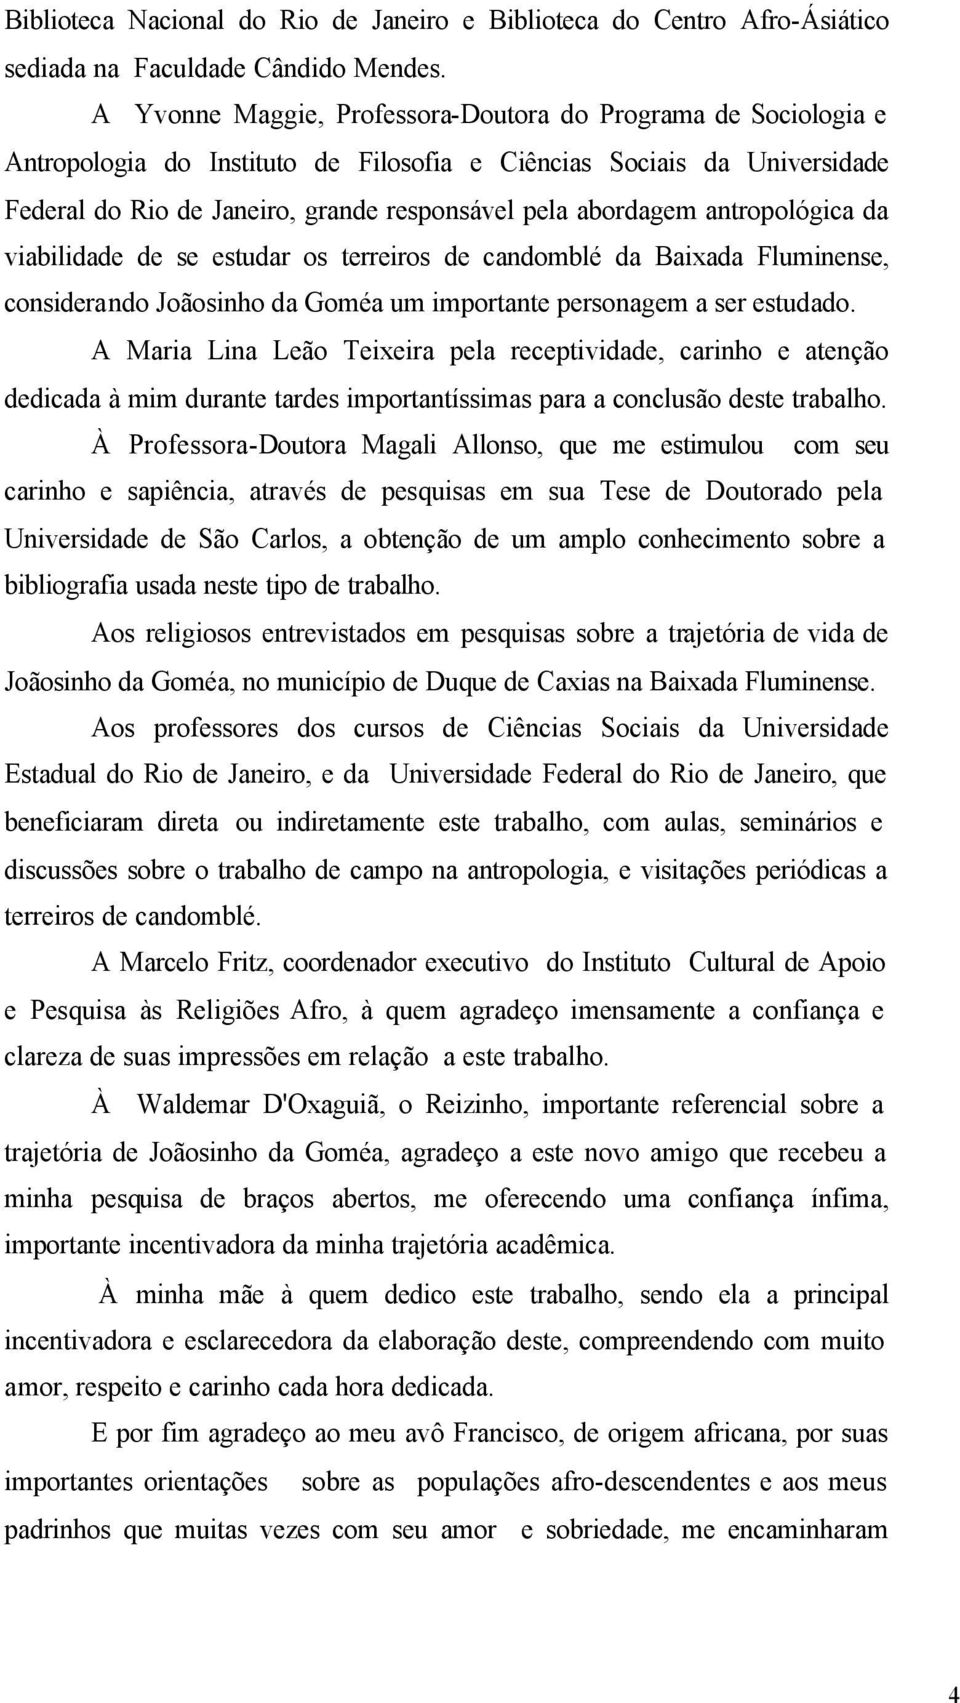 antropológica da viabilidade de se estudar os terreiros de candomblé da Baixada Fluminense, considerando Joãosinho da Goméa um importante personagem a ser estudado.